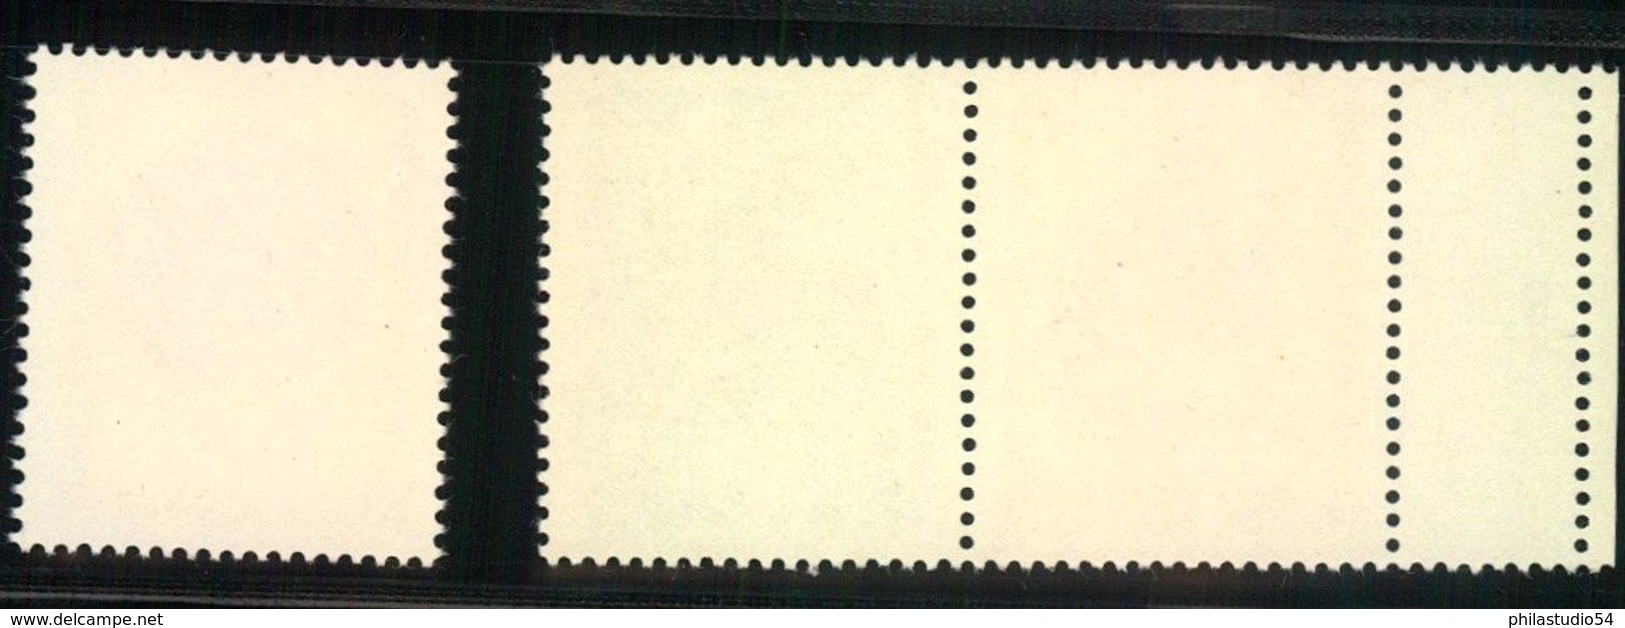 1969, Lausitzer Volkskunst, Zdr 10 Und 50 Pfg. Postfrisch Mit Leefeld Links Und 20 Pfg.Einzelmarke - Nuovi